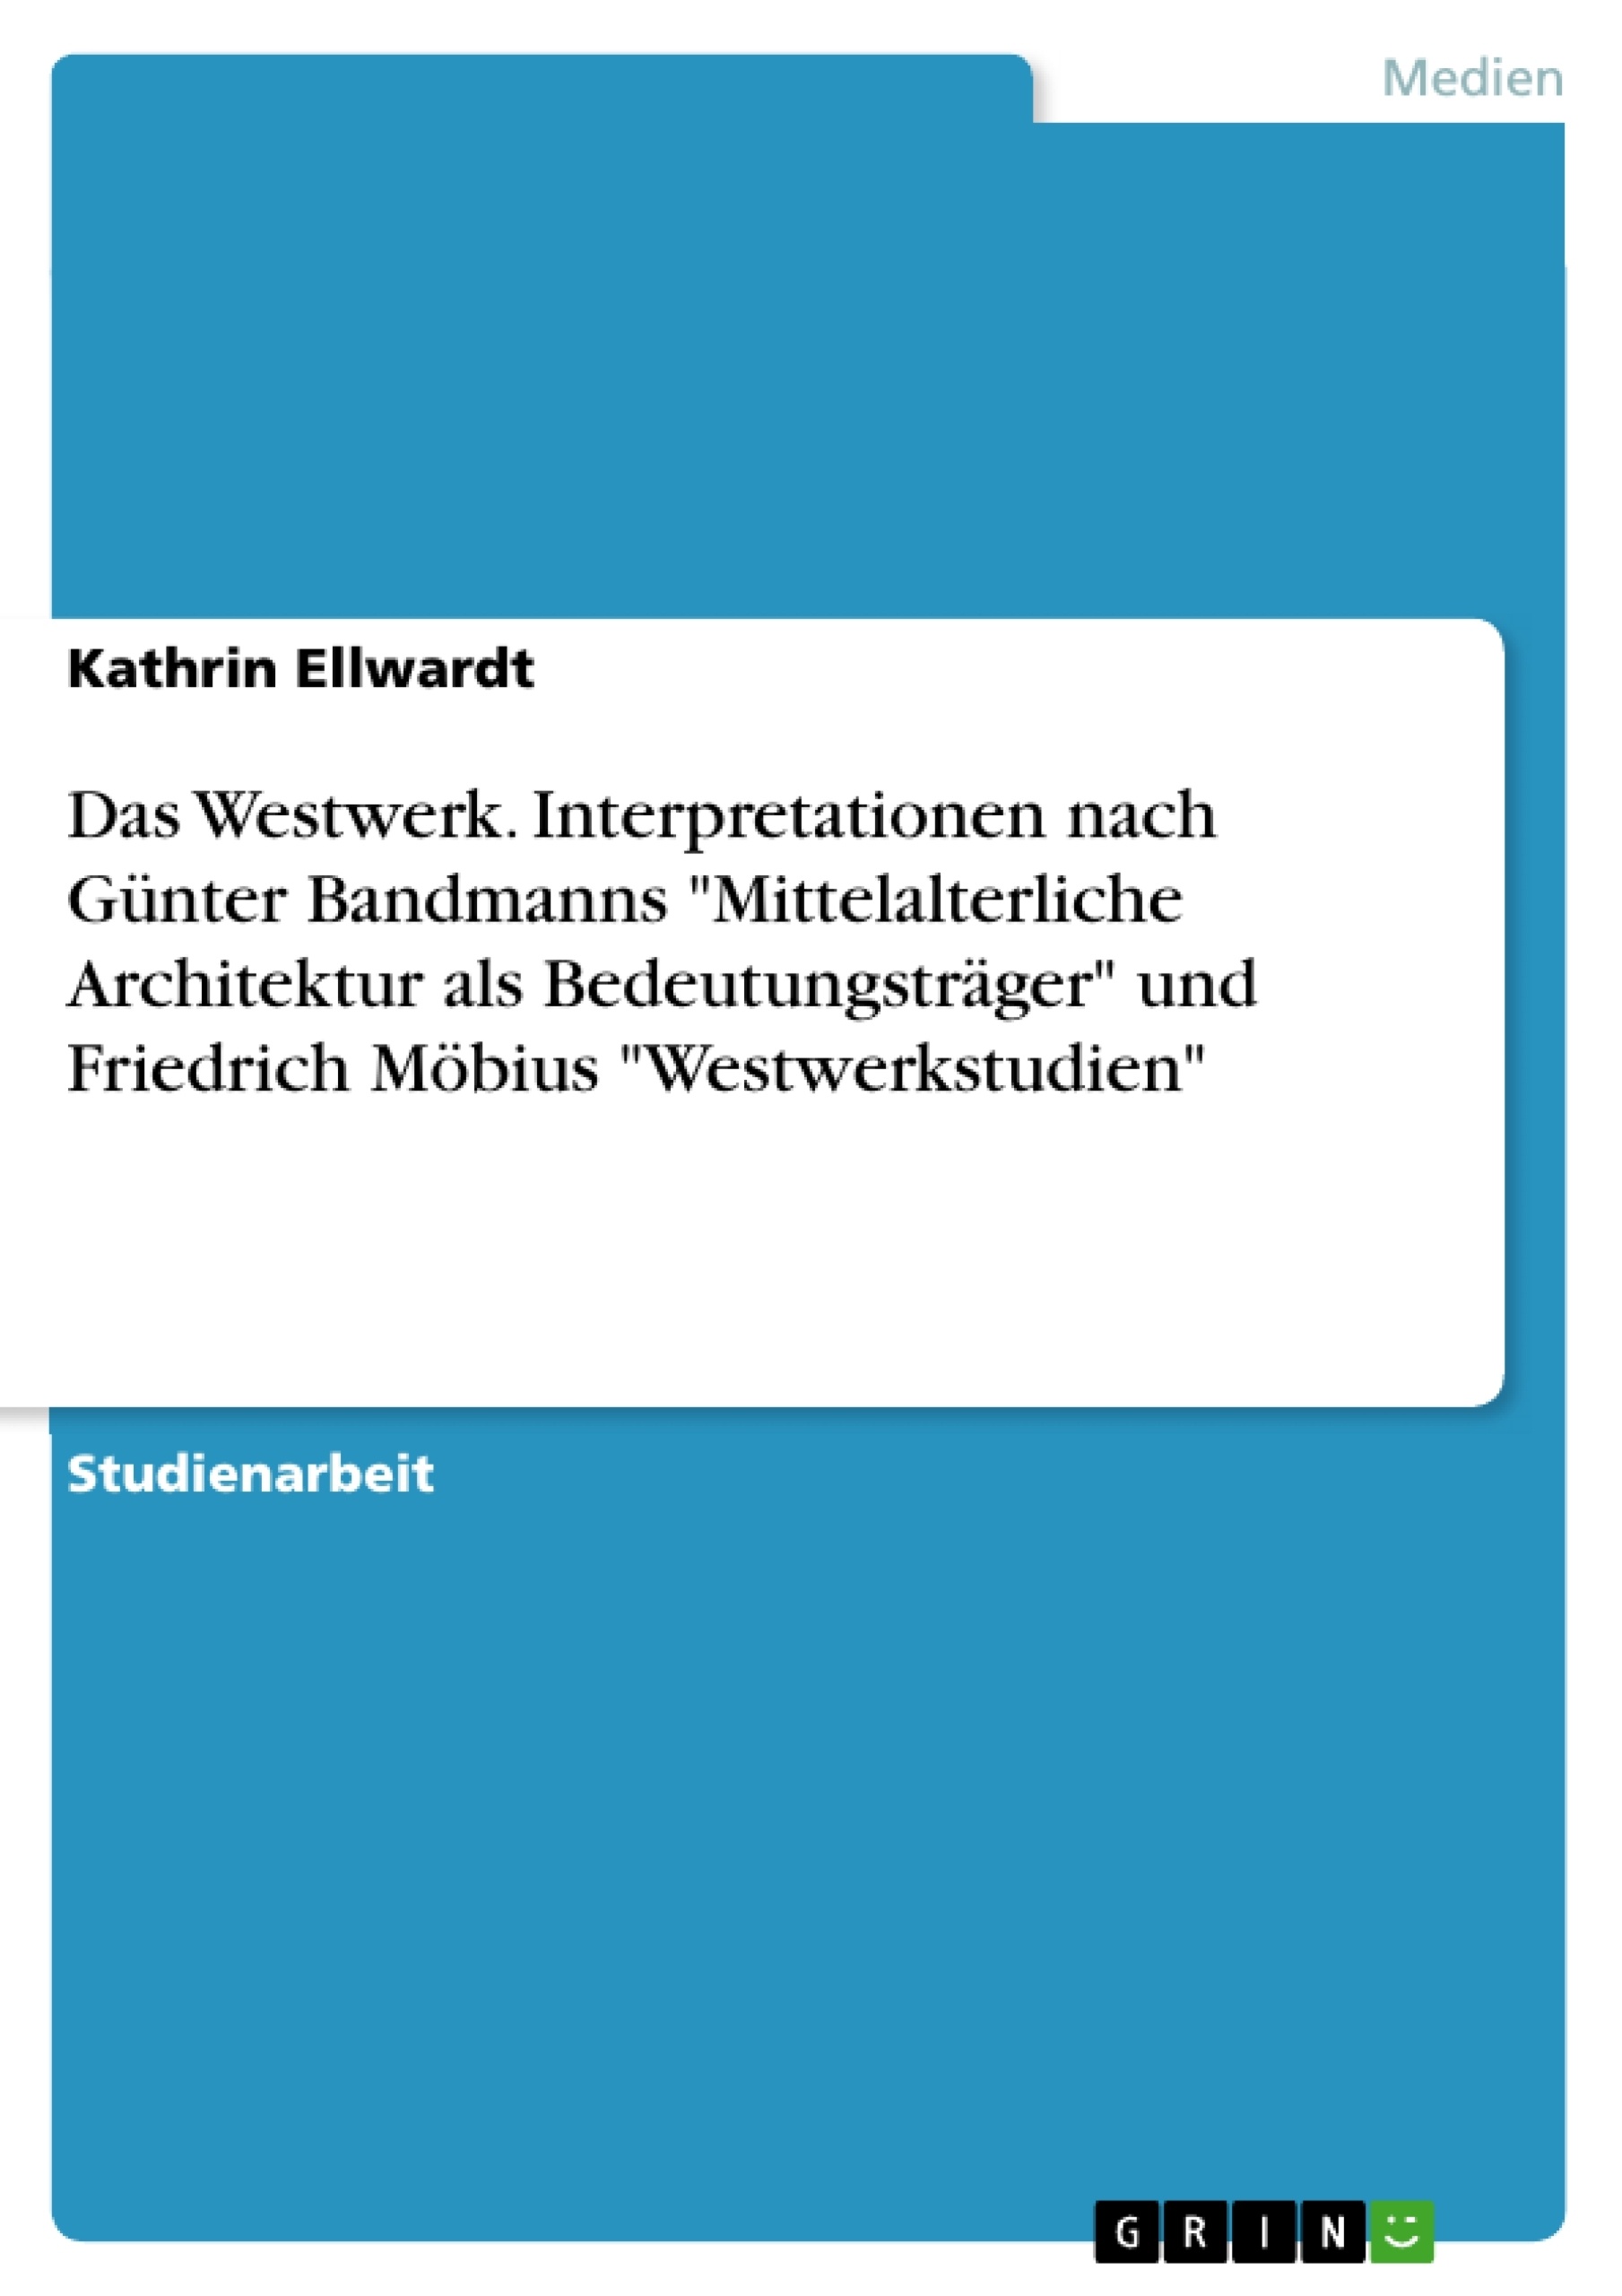 Título: Das Westwerk. Interpretationen nach Günter Bandmanns "Mittelalterliche Architektur als Bedeutungsträger" und Friedrich Möbius "Westwerkstudien"